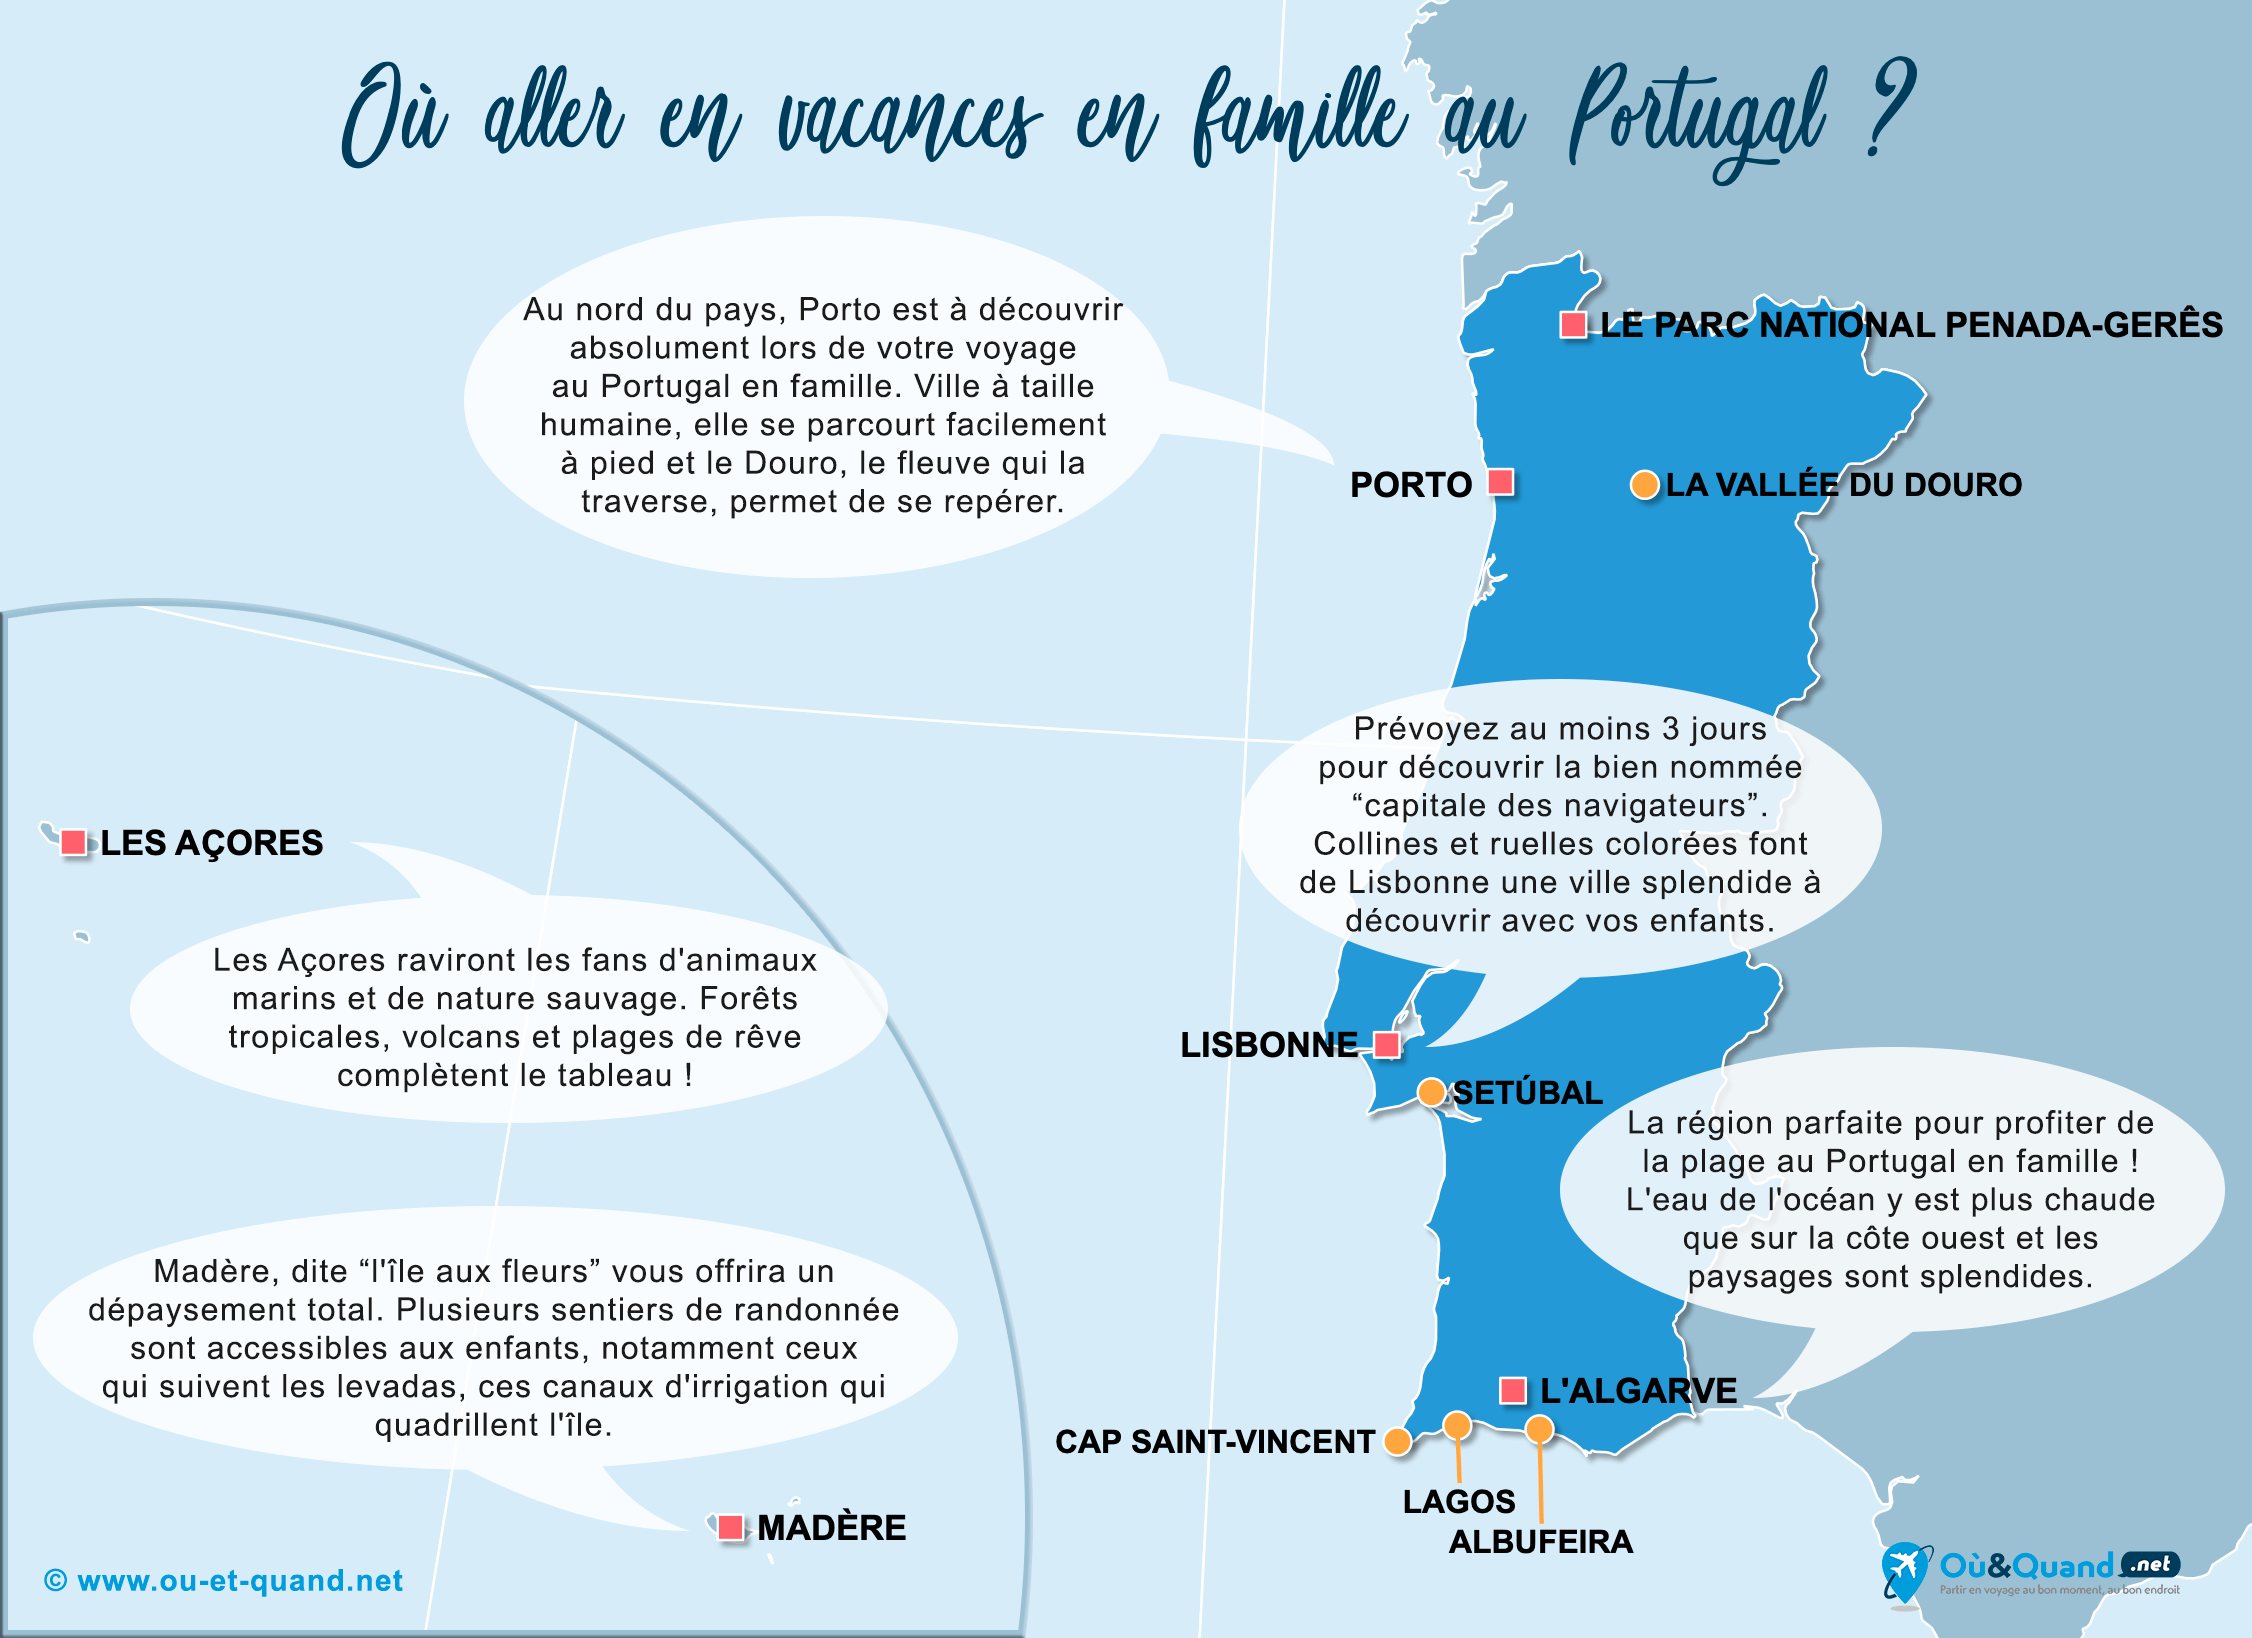 La carte des endroits au Portugal où aller en vacances en famille